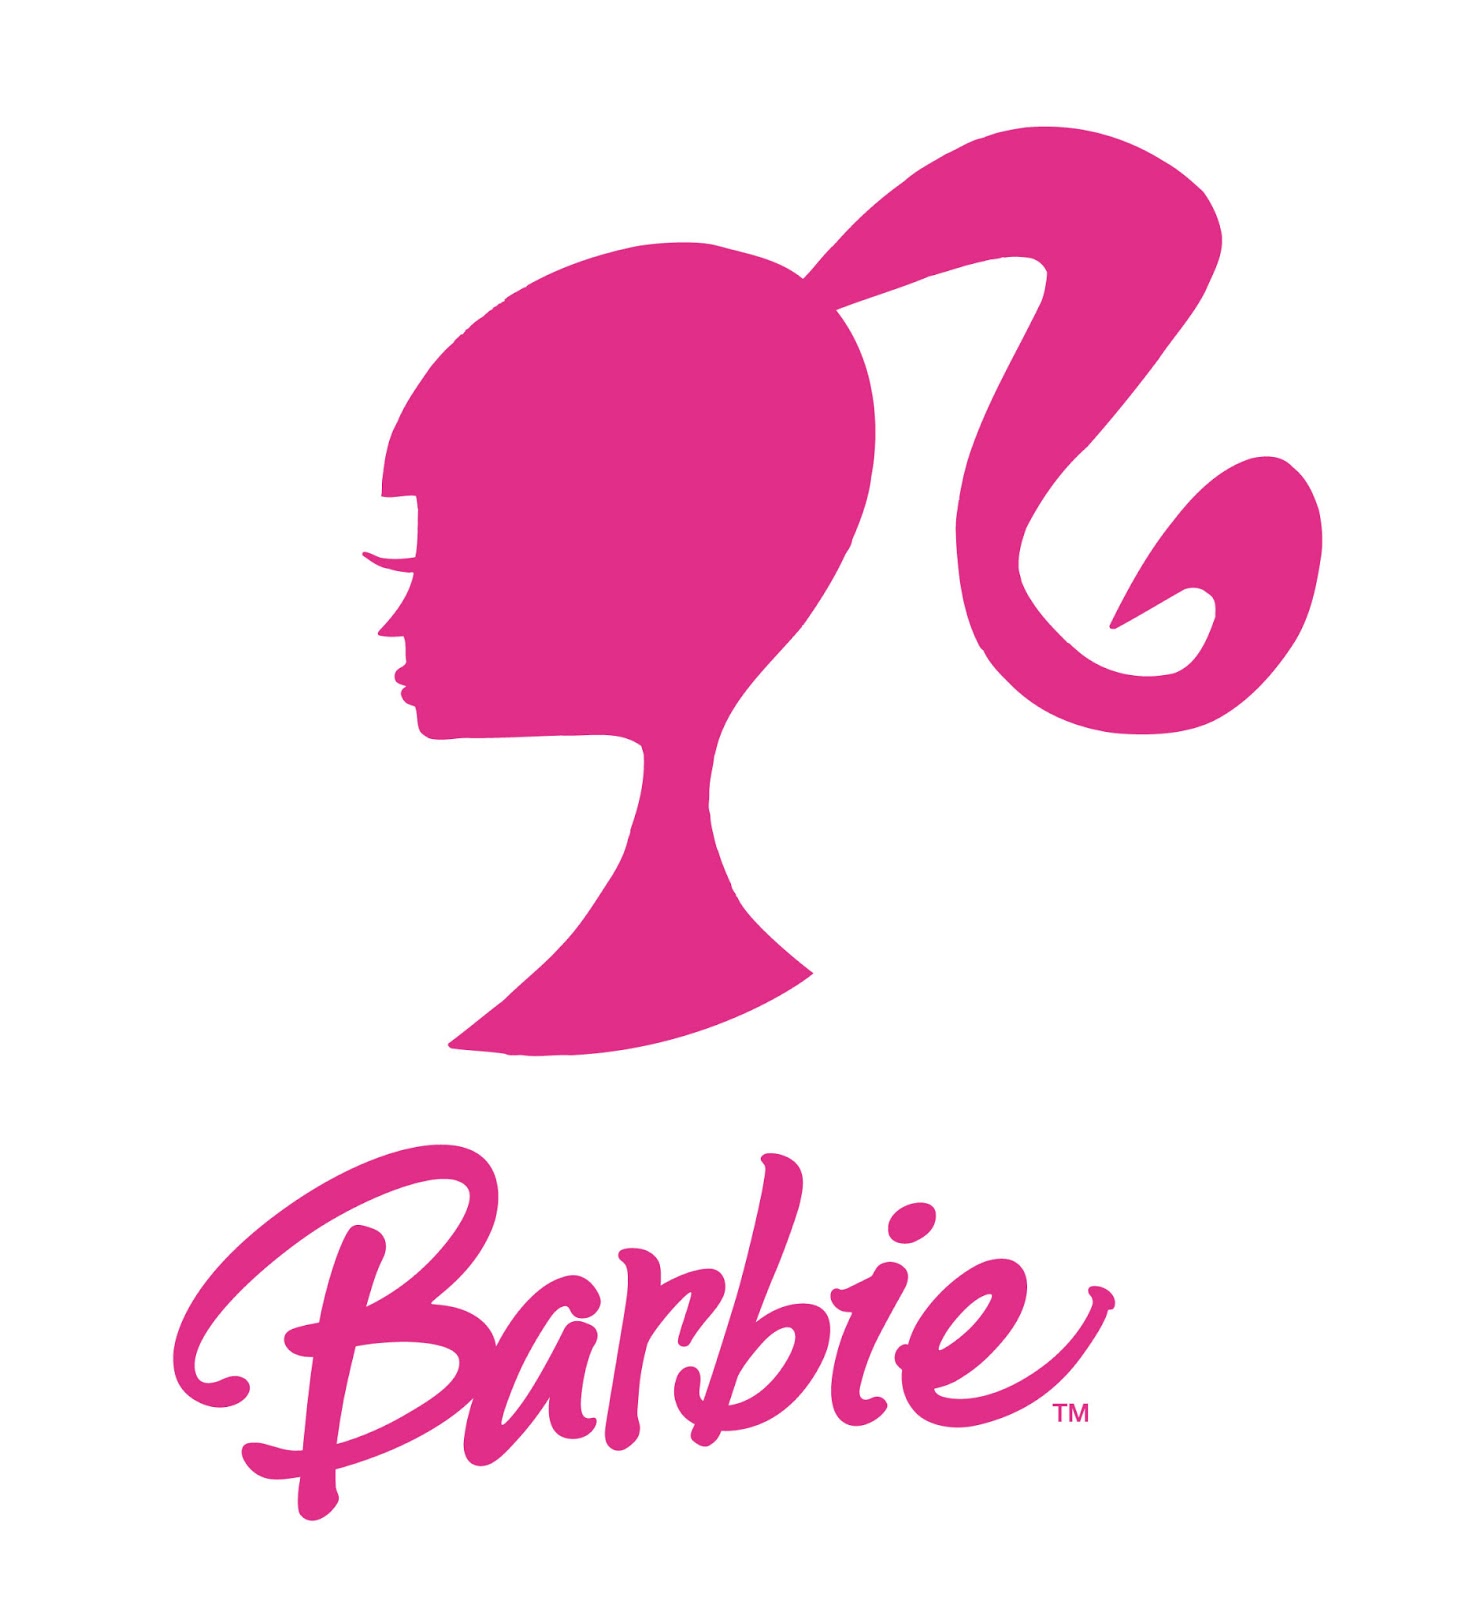 Printable Barbie Logo - Printable World Holiday